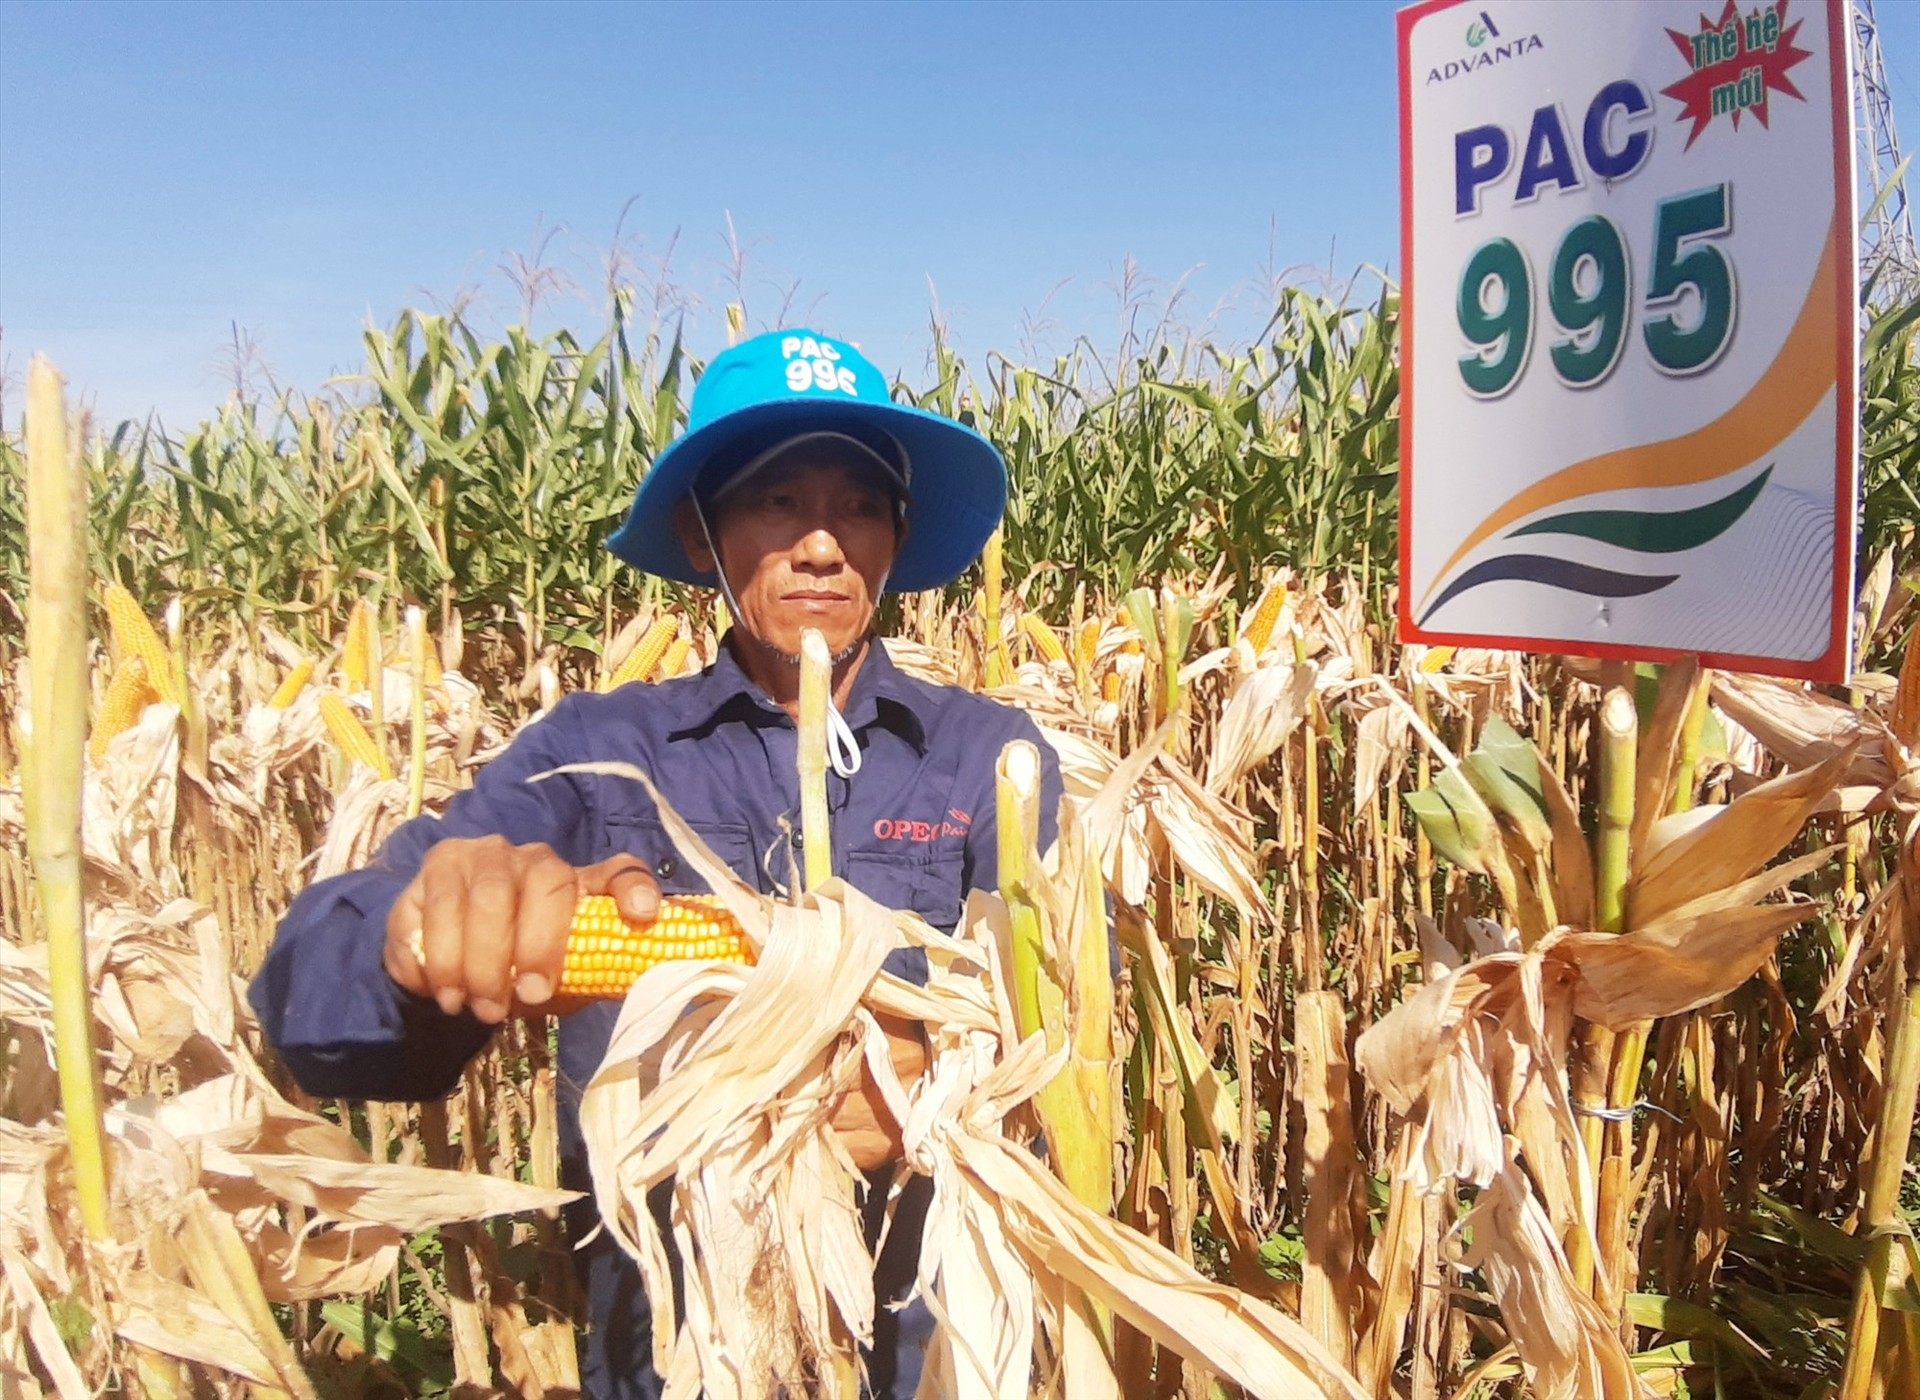 Vụ này, trồng 1 sào bắp lai thế hệ mới PAC995, nông dân xã Điện Quang (Điện Bàn) lãi ròng khoảng 2,2 triệu đồng. Ảnh: MAI NHI